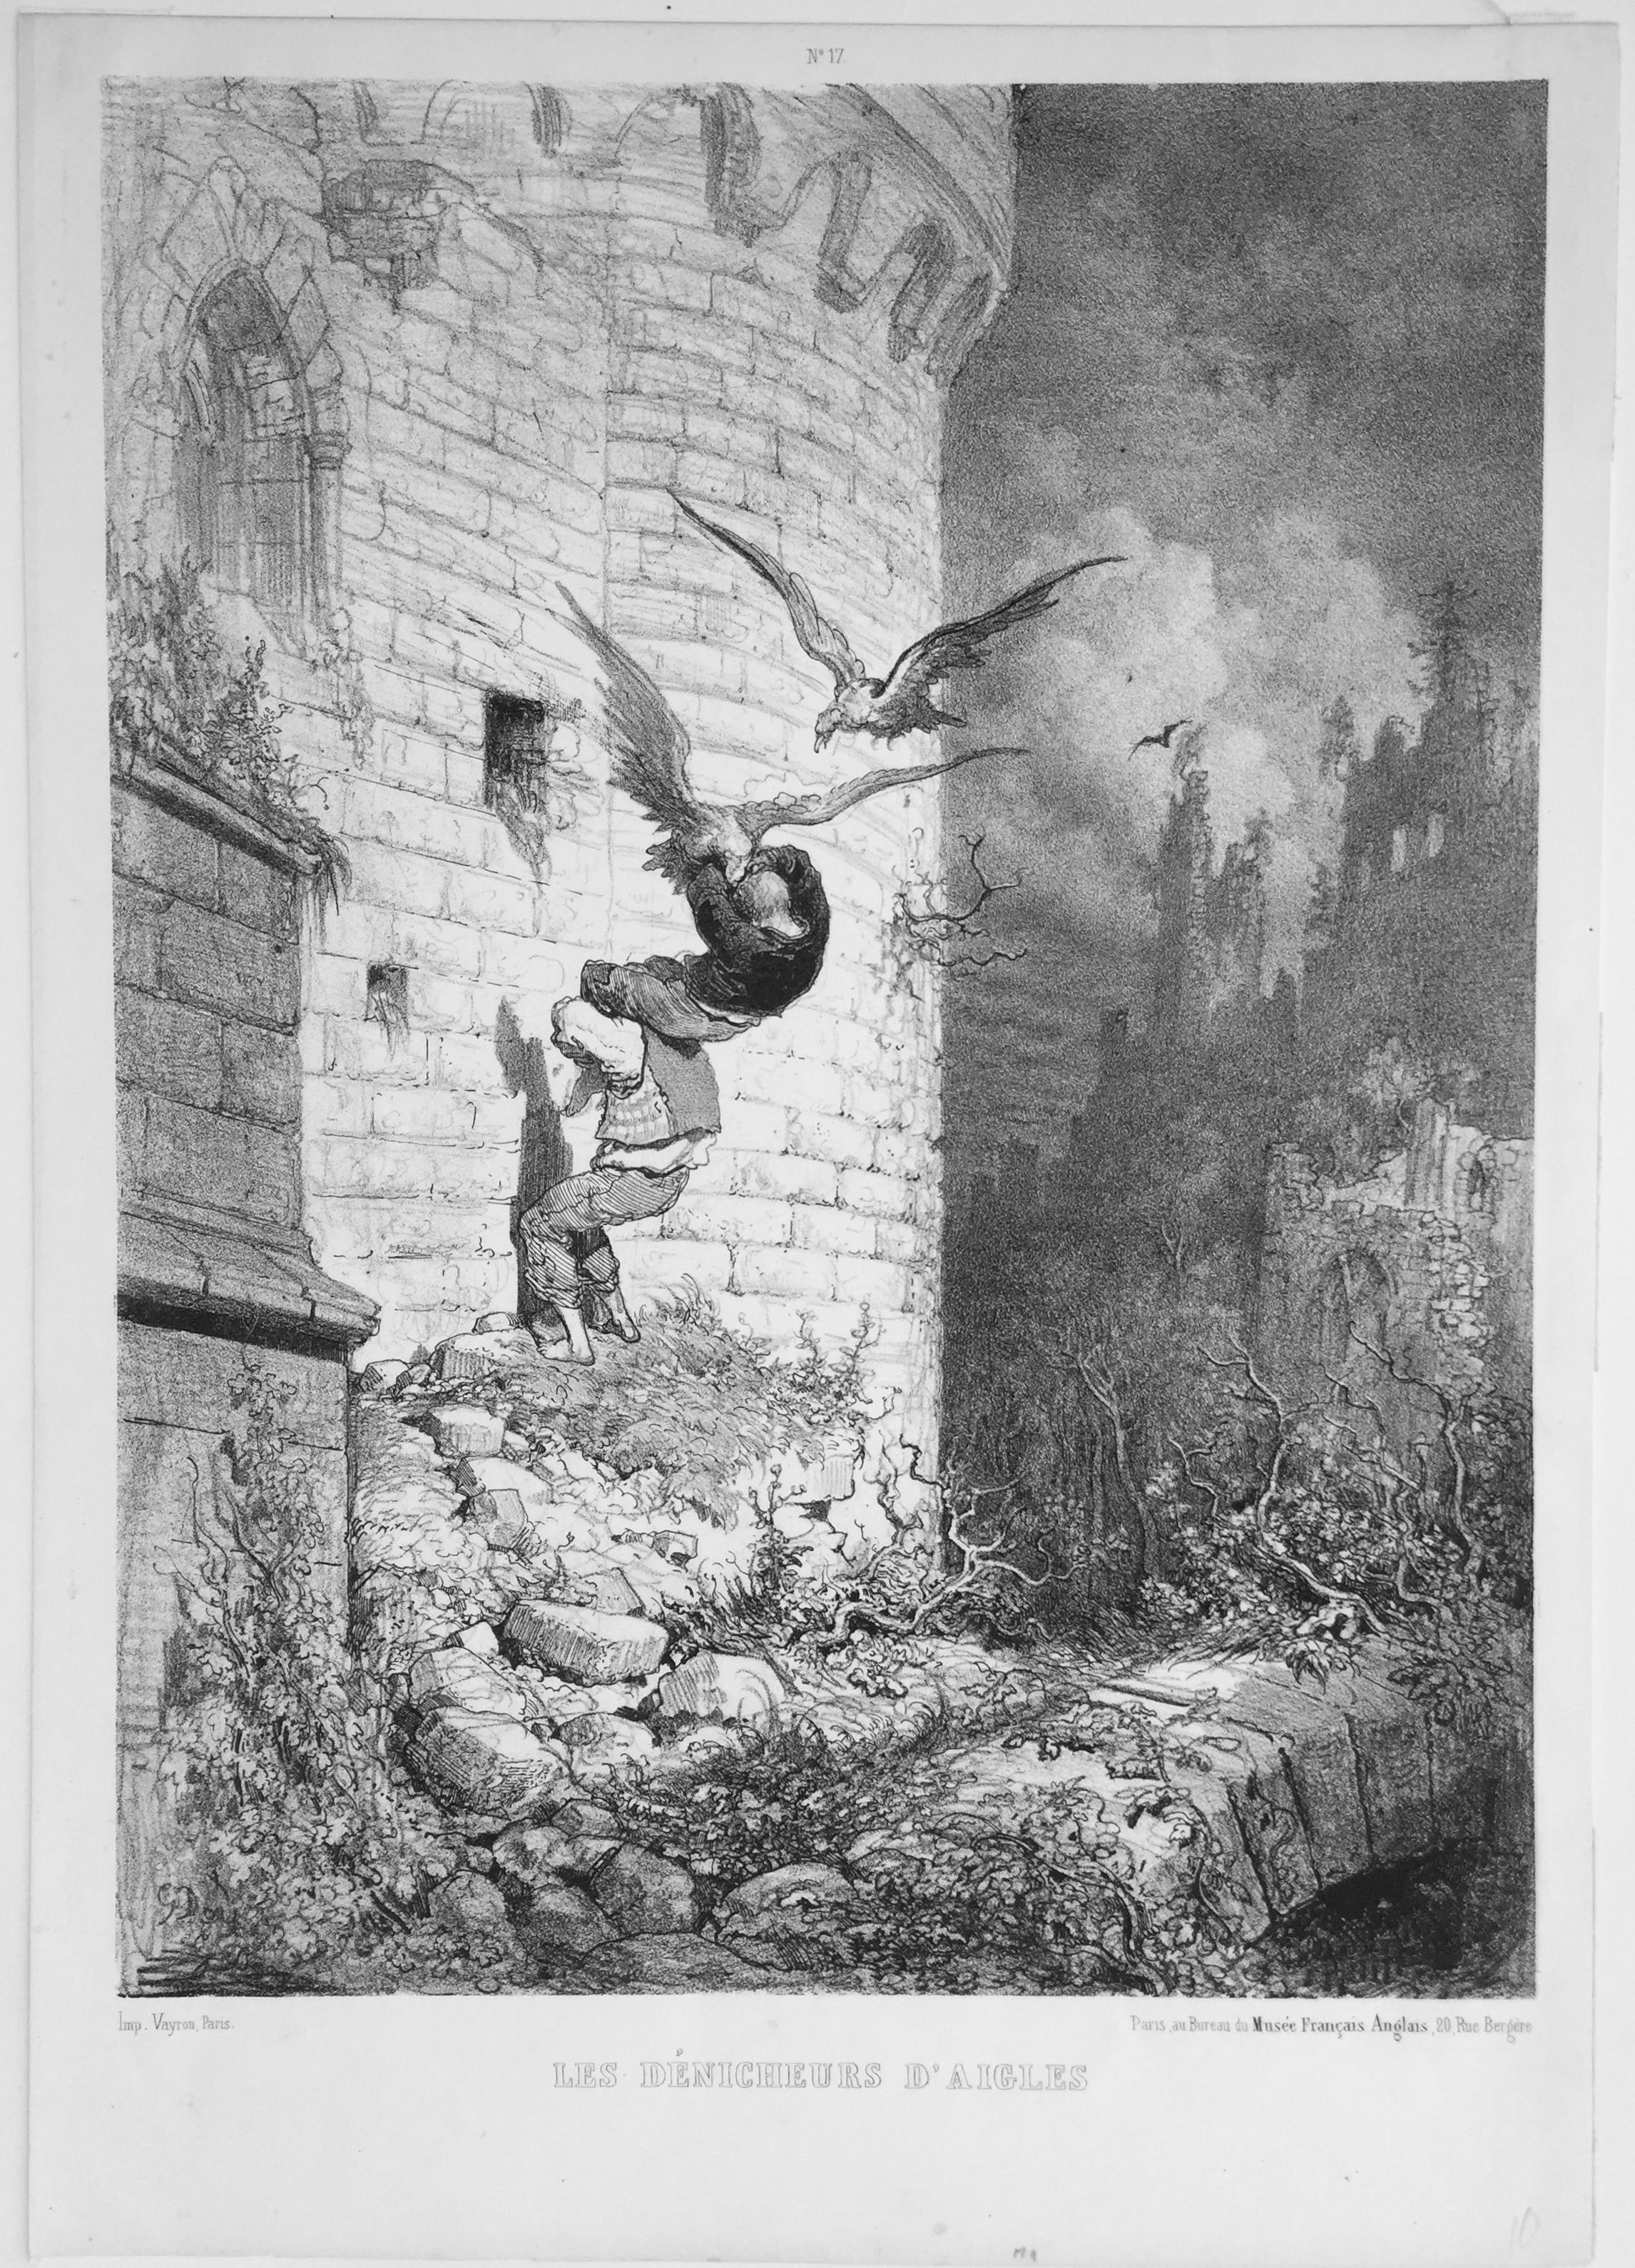 THE EAGLE FINDERS (LES DENICHEURS D'AIGLES) - Print by Gustave Doré